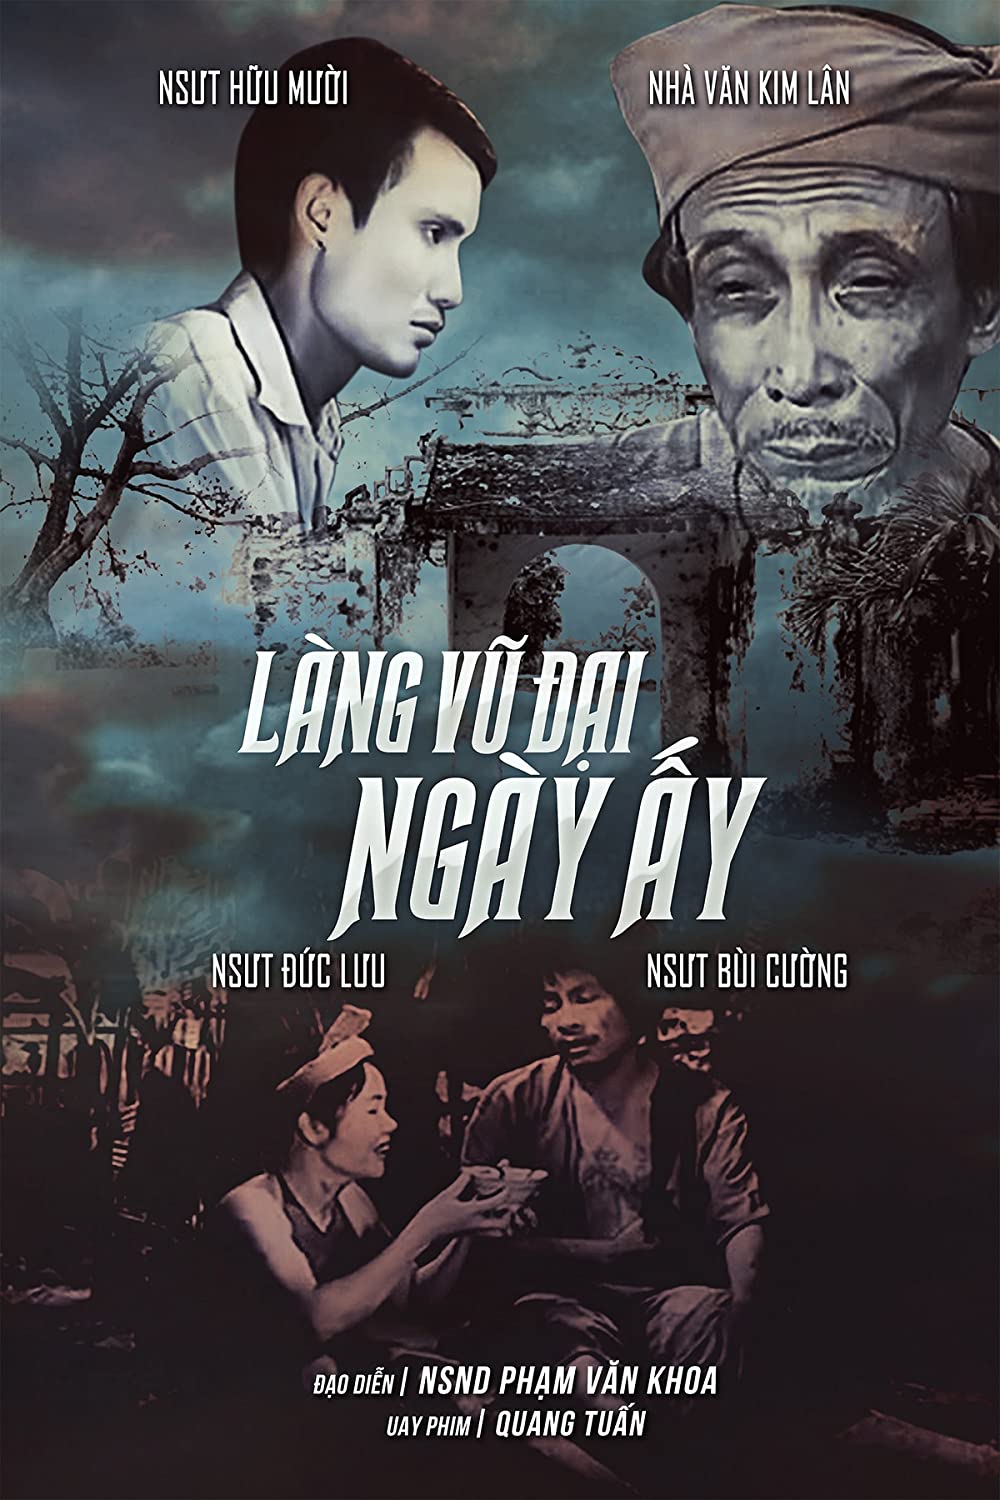 Phim Việt Nam (Vietnamese movies): Nếu bạn yêu điện ảnh, thì không thể bỏ qua các tác phẩm điện ảnh đỉnh cao của nền điện ảnh Việt Nam. Đưa mình vào thế giới mà tình cảm người Việt được tái hiện đầy chân thực và sâu sắc.